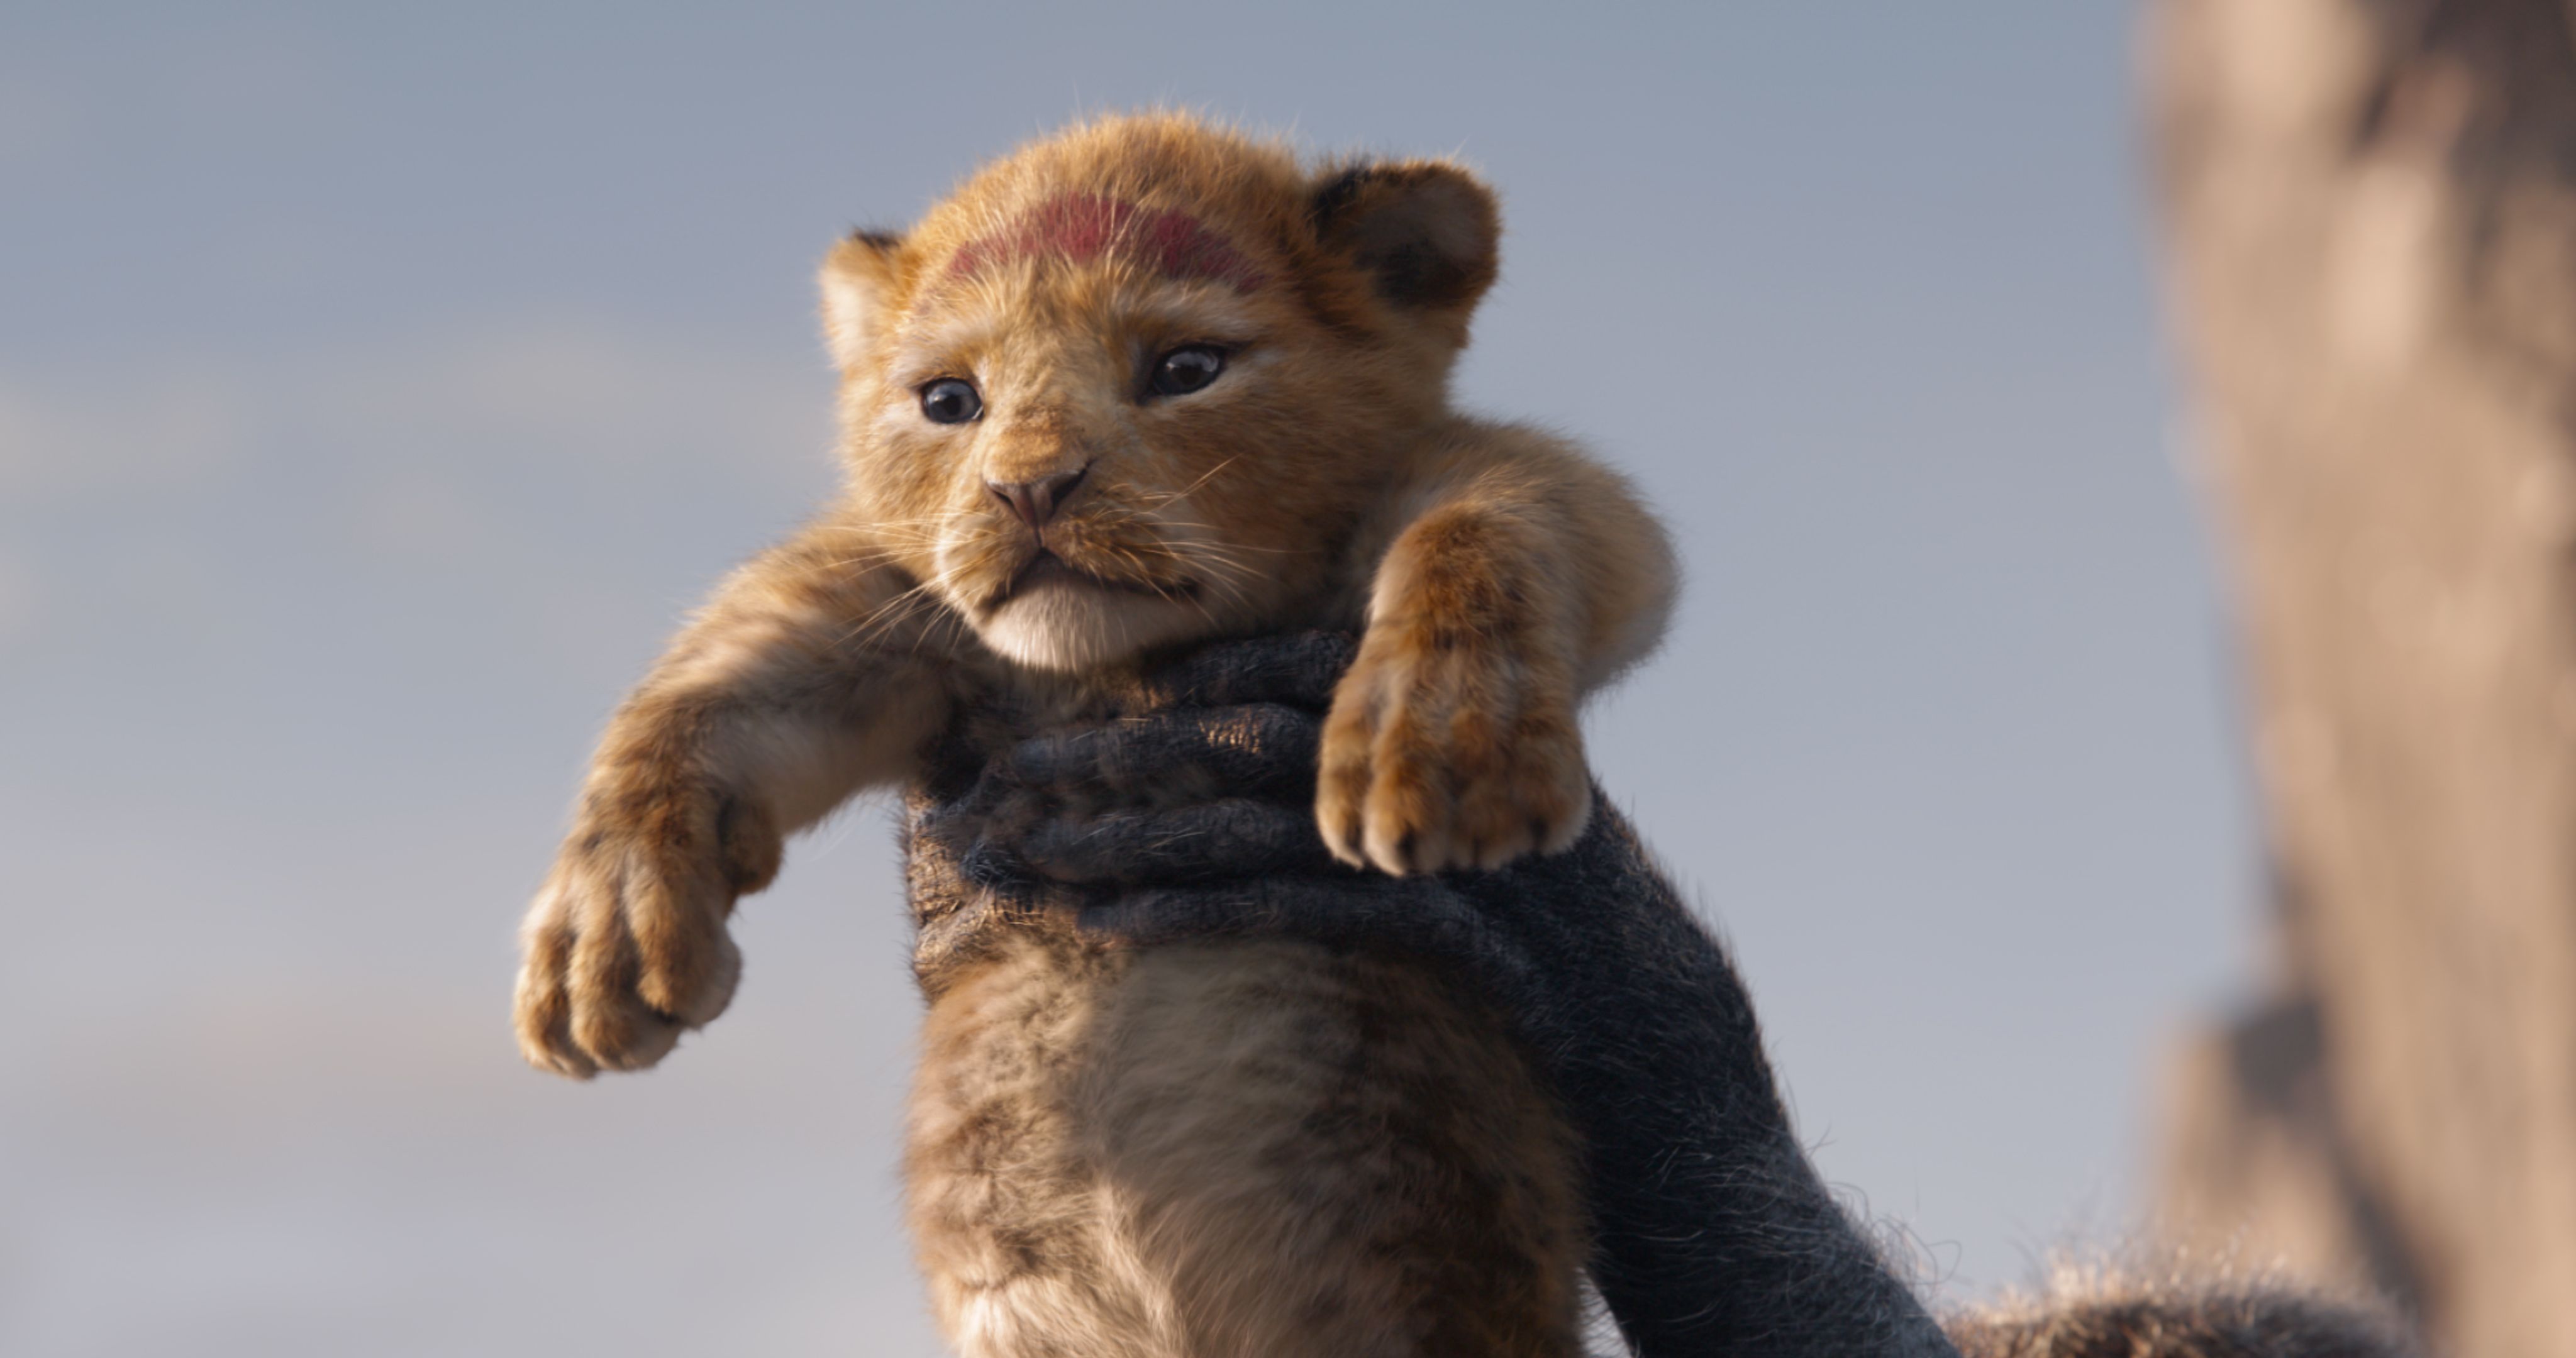 Horen van Isoleren Onophoudelijk How the New Lion King Film Could Help the Real-Life Lion Crisis